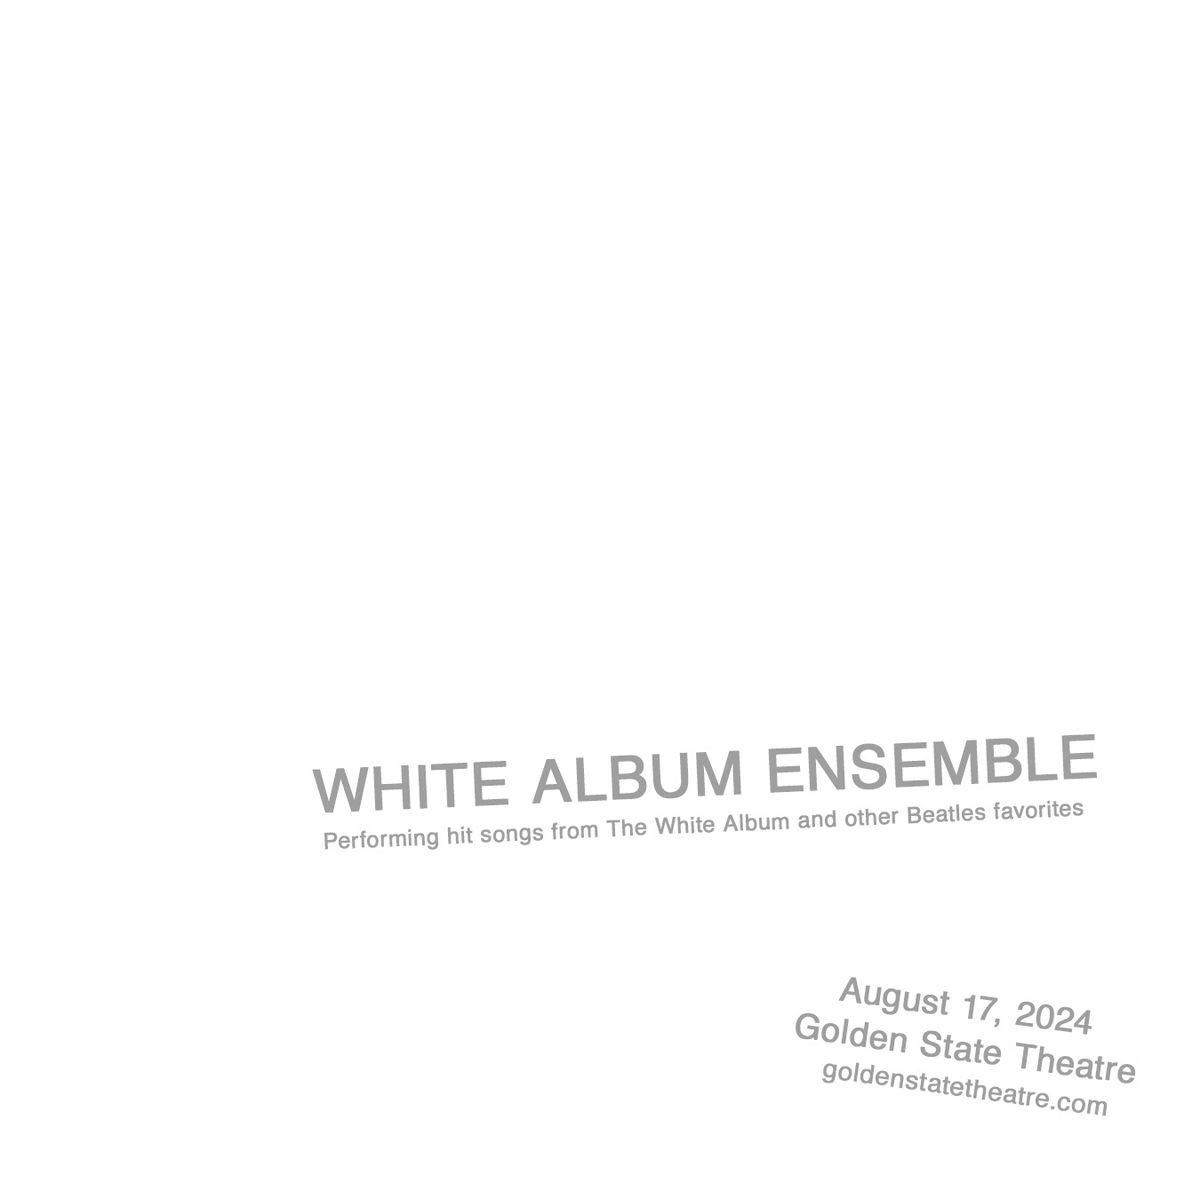 White Album Ensemble